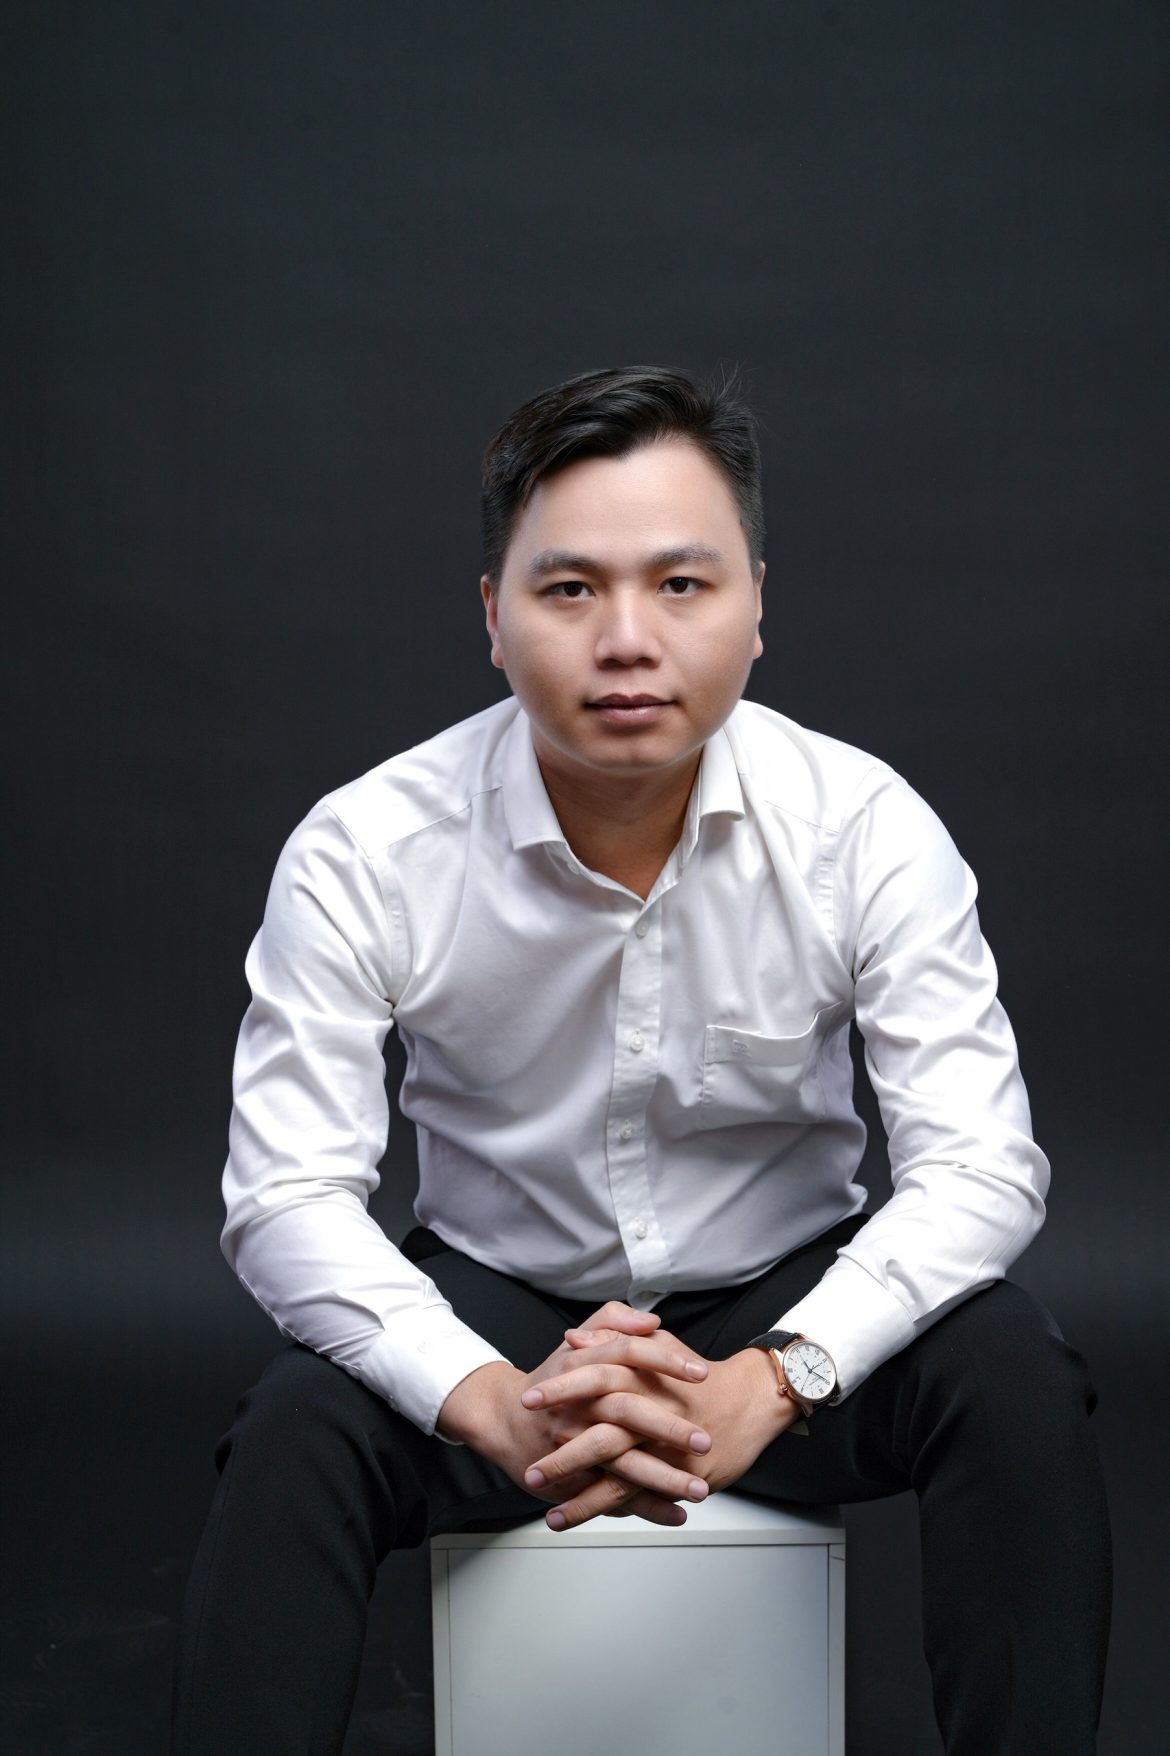 Câu chuyện khởi nghiệp của chàng trai gốc miền Tây Nguyễn Minh Khôi